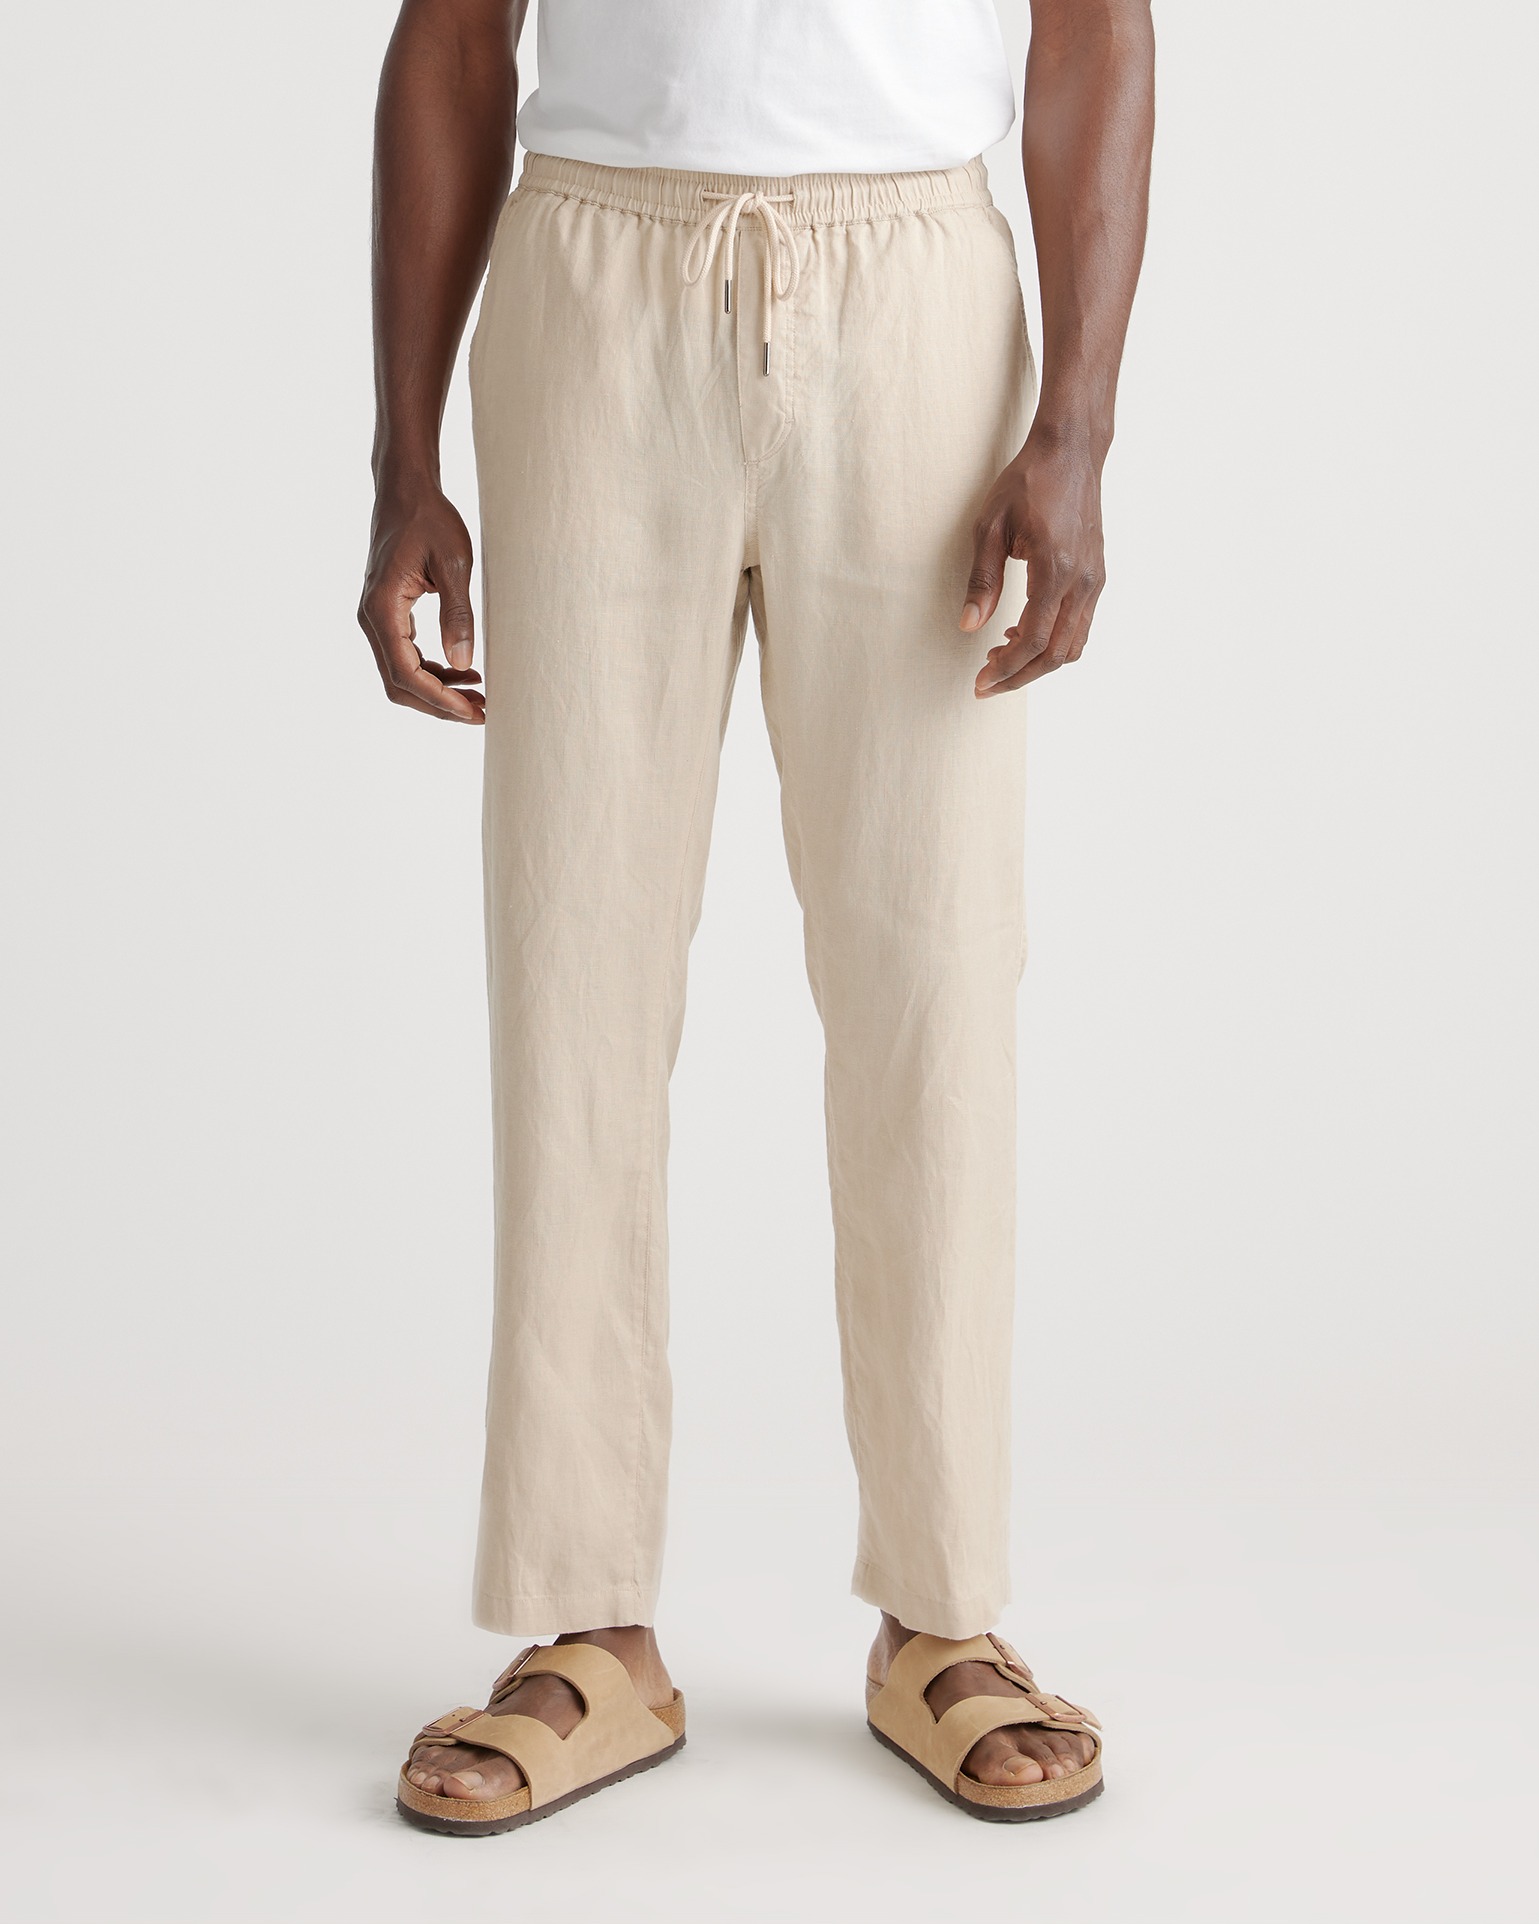 Quince 100% European Linen Pants - ShopStyle